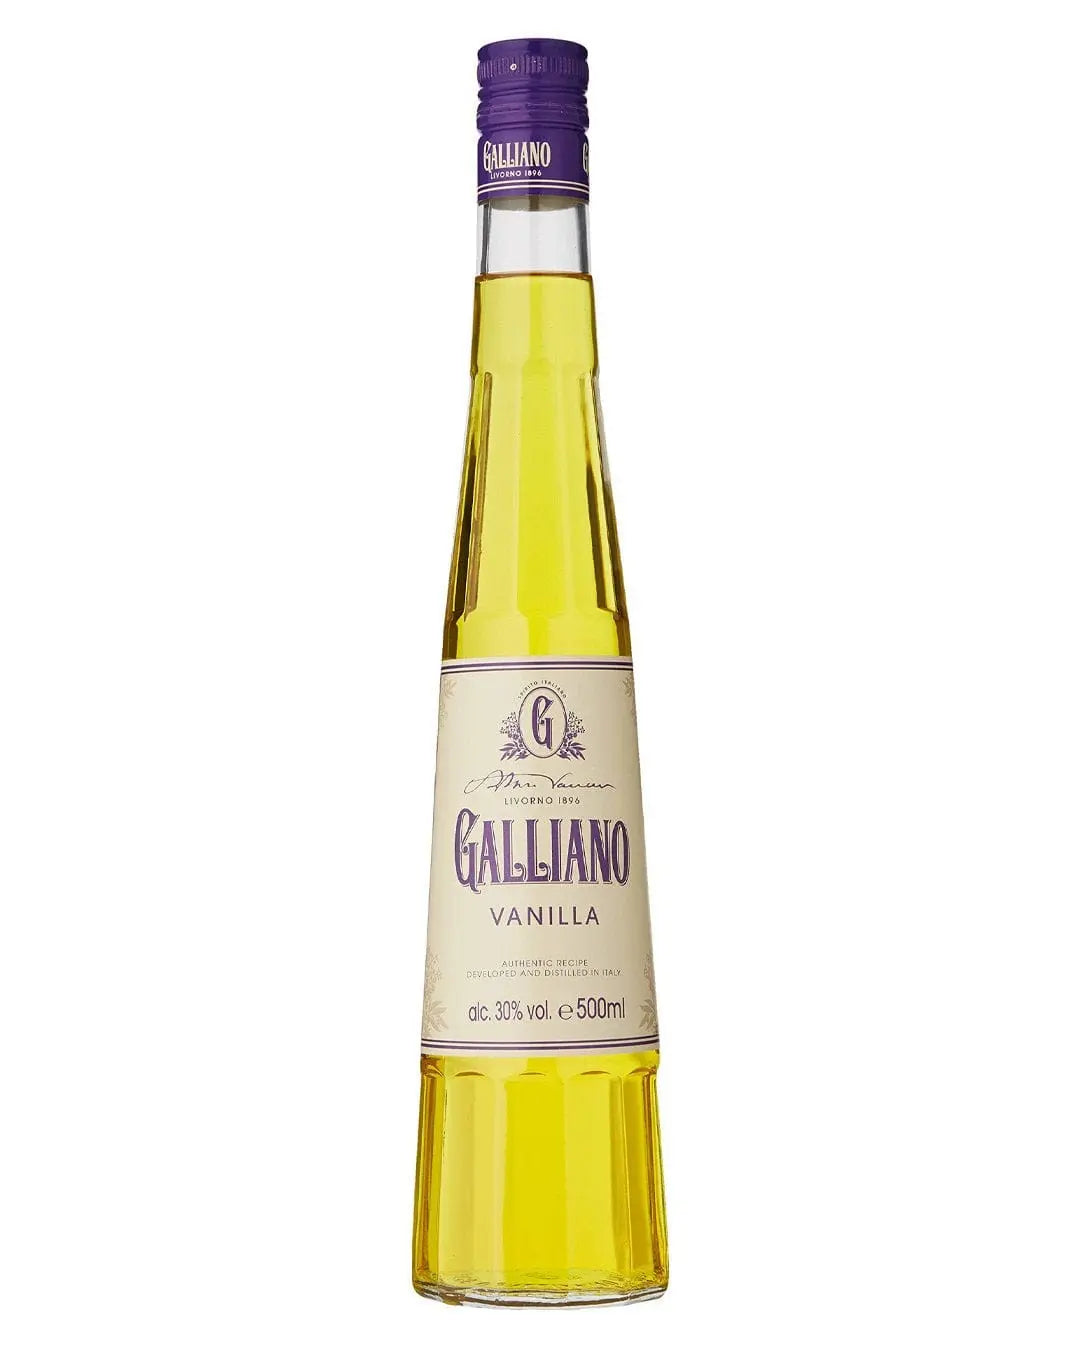 Galliano Vanilla Liqueur, 50 cl Liqueurs & Other Spirits